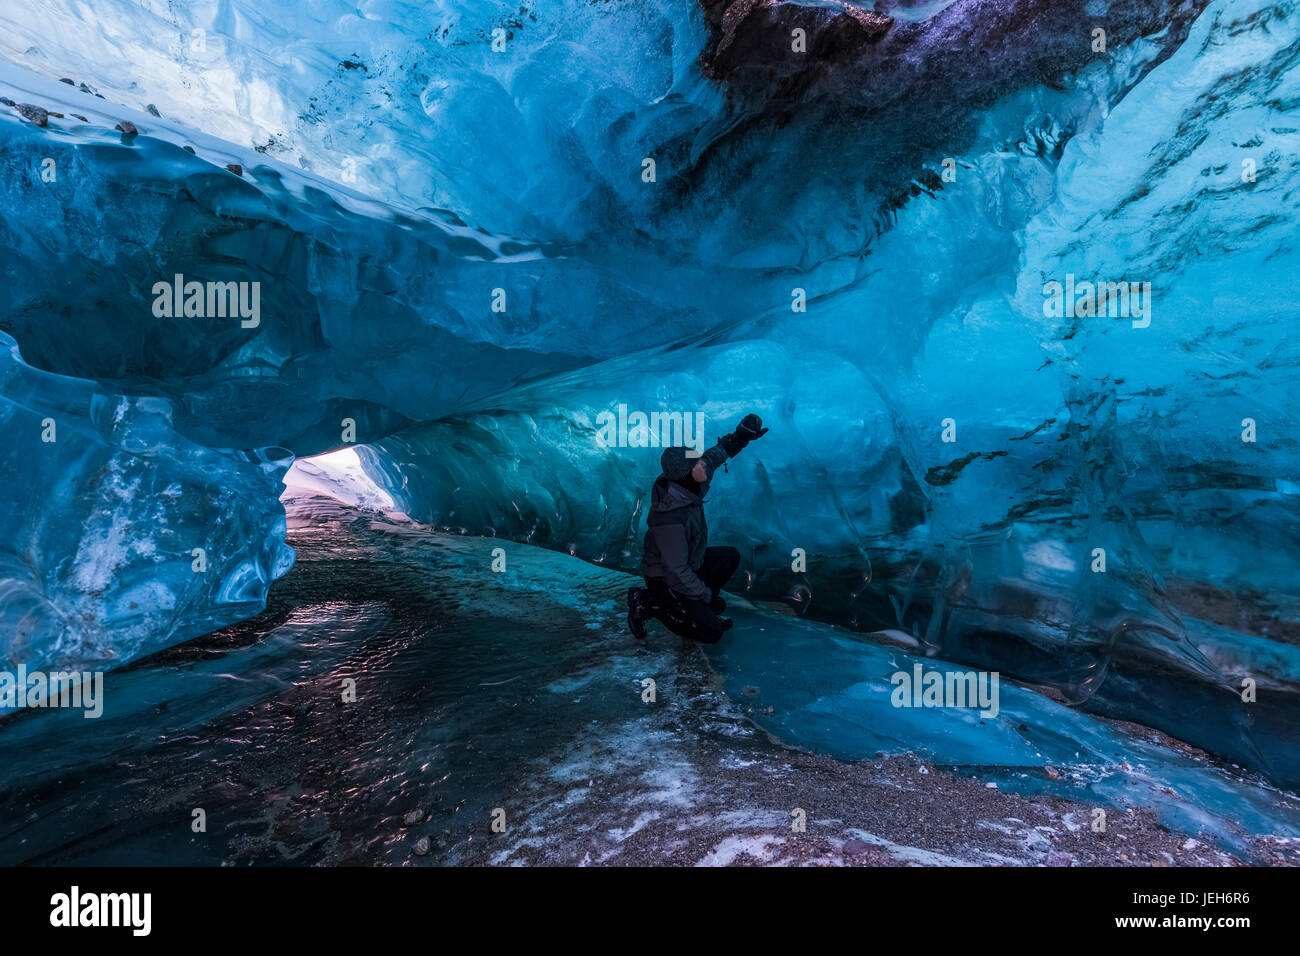 Un homme examine la glace bleue claire à l'intérieur d'un tunnel sous la surface de Black Rapids Glacier en hiver ; Alaska, États-Unis d'Amérique Banque D'Images